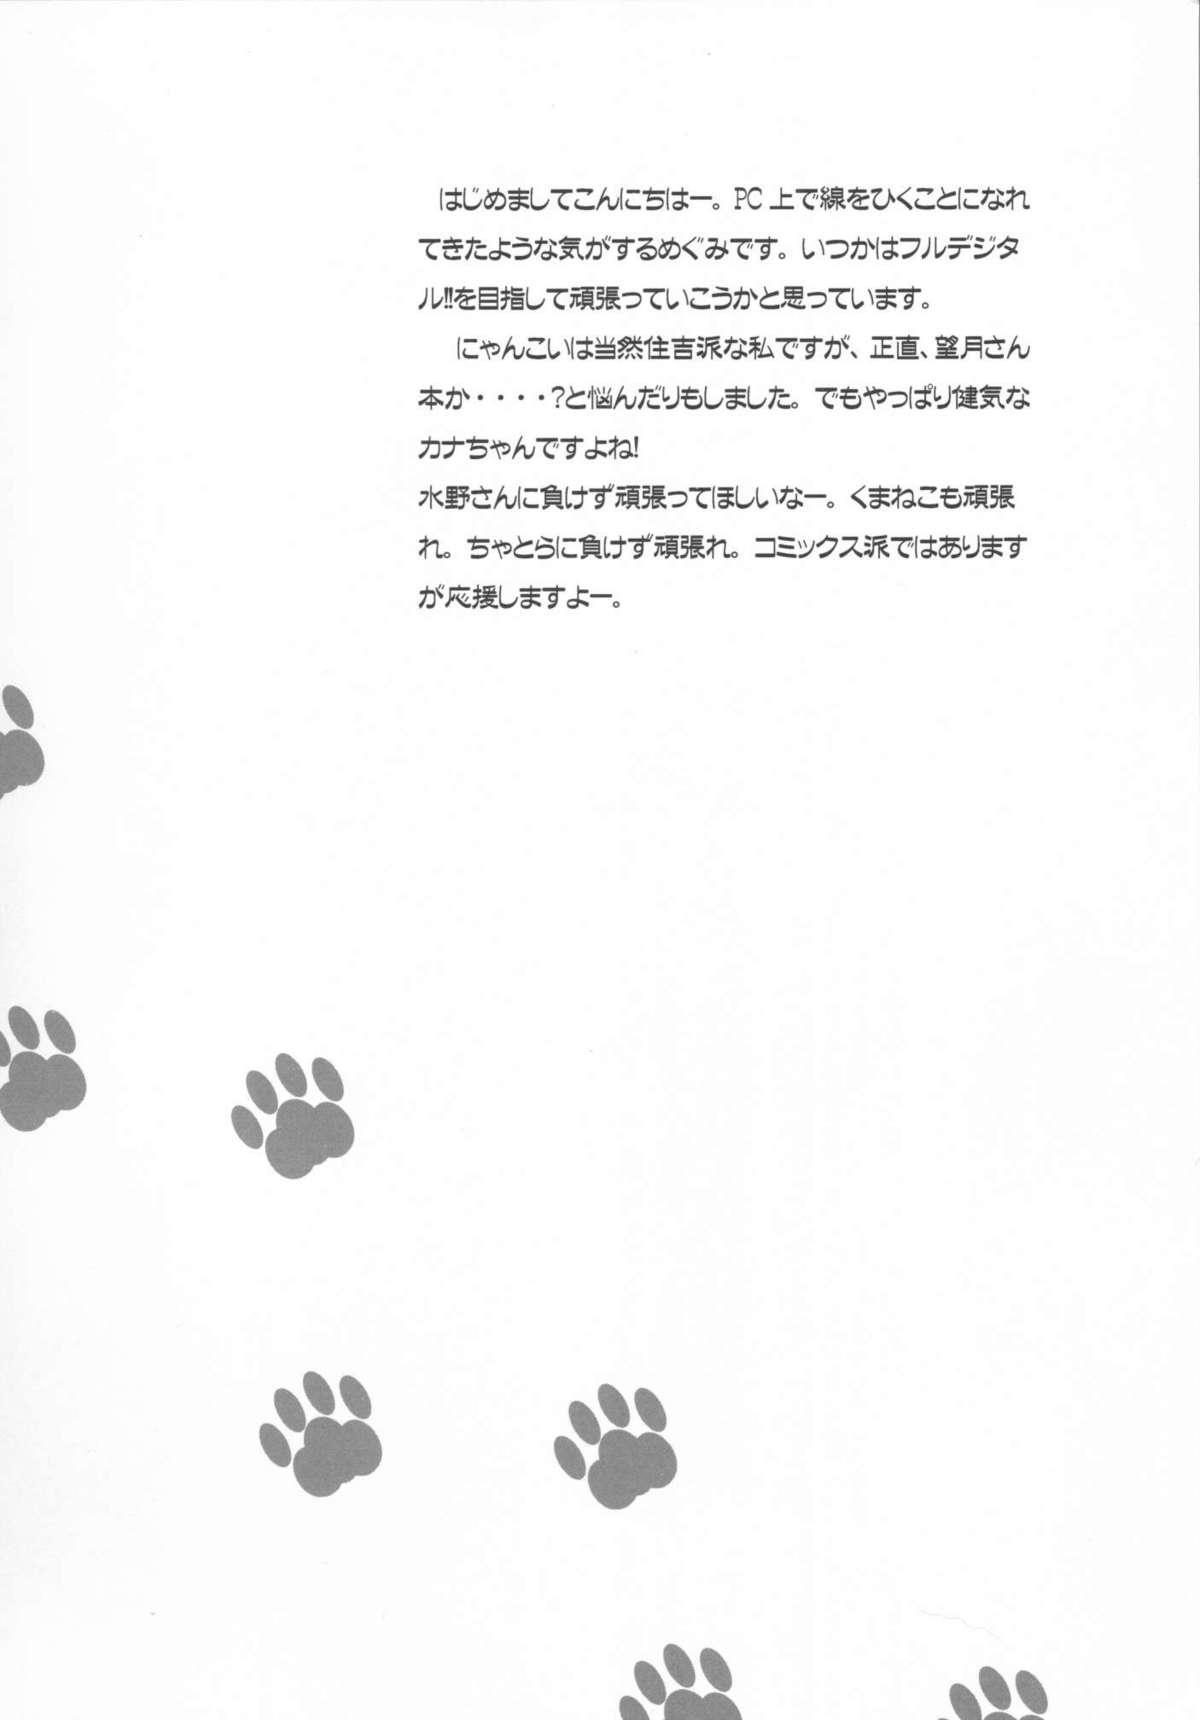 Bra Nakaochi Karubi ni Kaburitsuki - Nyan koi Toying - Page 3